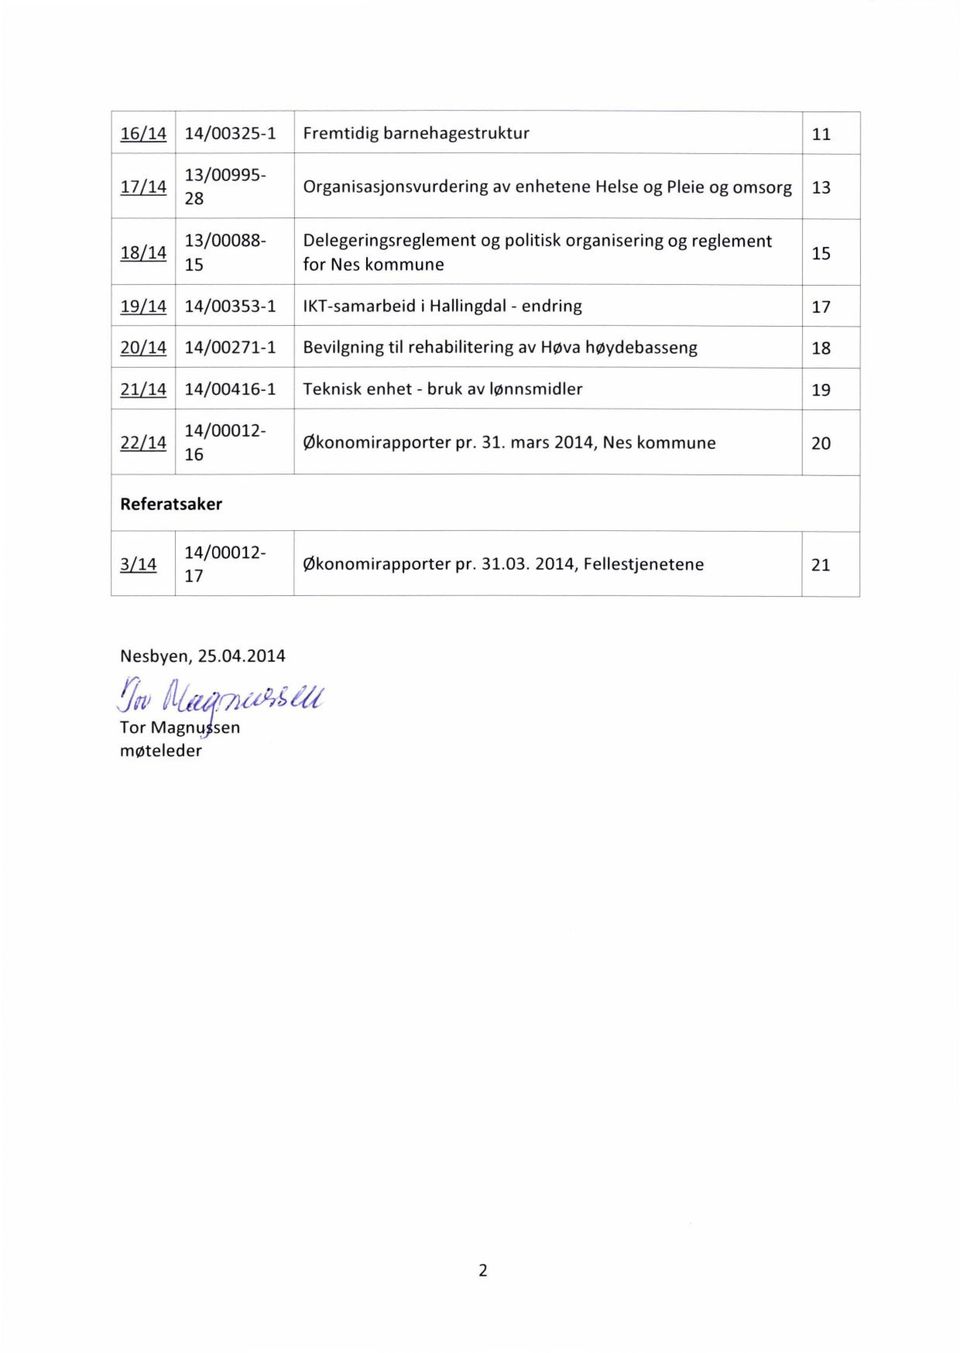 14/00271-1Bevilgning til rehabilitering av Høya høydebasseng 18 21/14 14/00416-1Teknisk enhet - bruk av lønnsmidler 19 22/14 14/00012-16 økonomirapporter